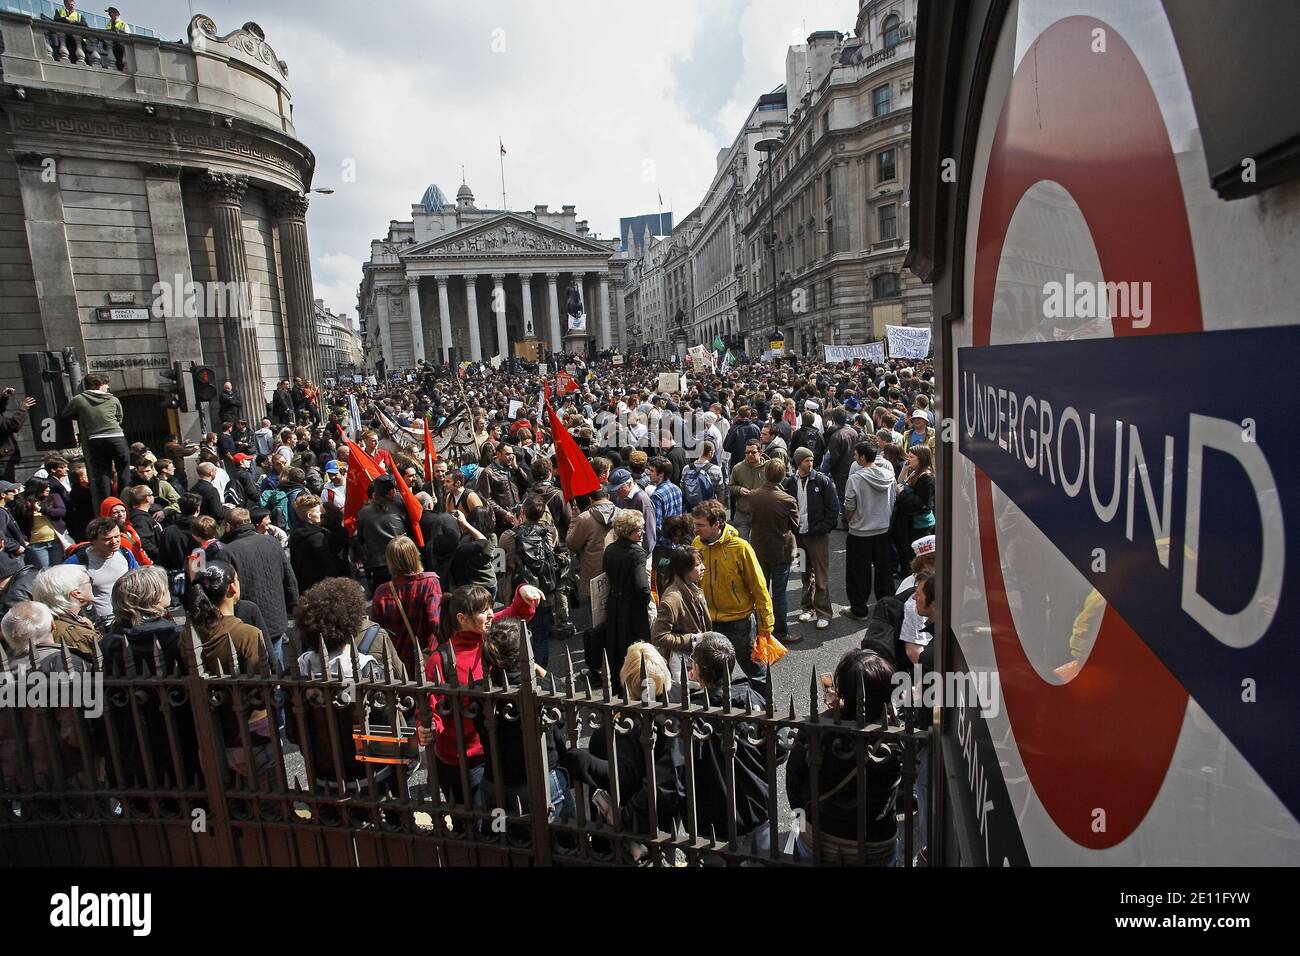 Demonstranten treffen sich auf die Bank of England, während Anti-Kapitalisten- und Klimaaktivisten in der Stadt London, Großbritannien, demonstrieren. Stockfoto